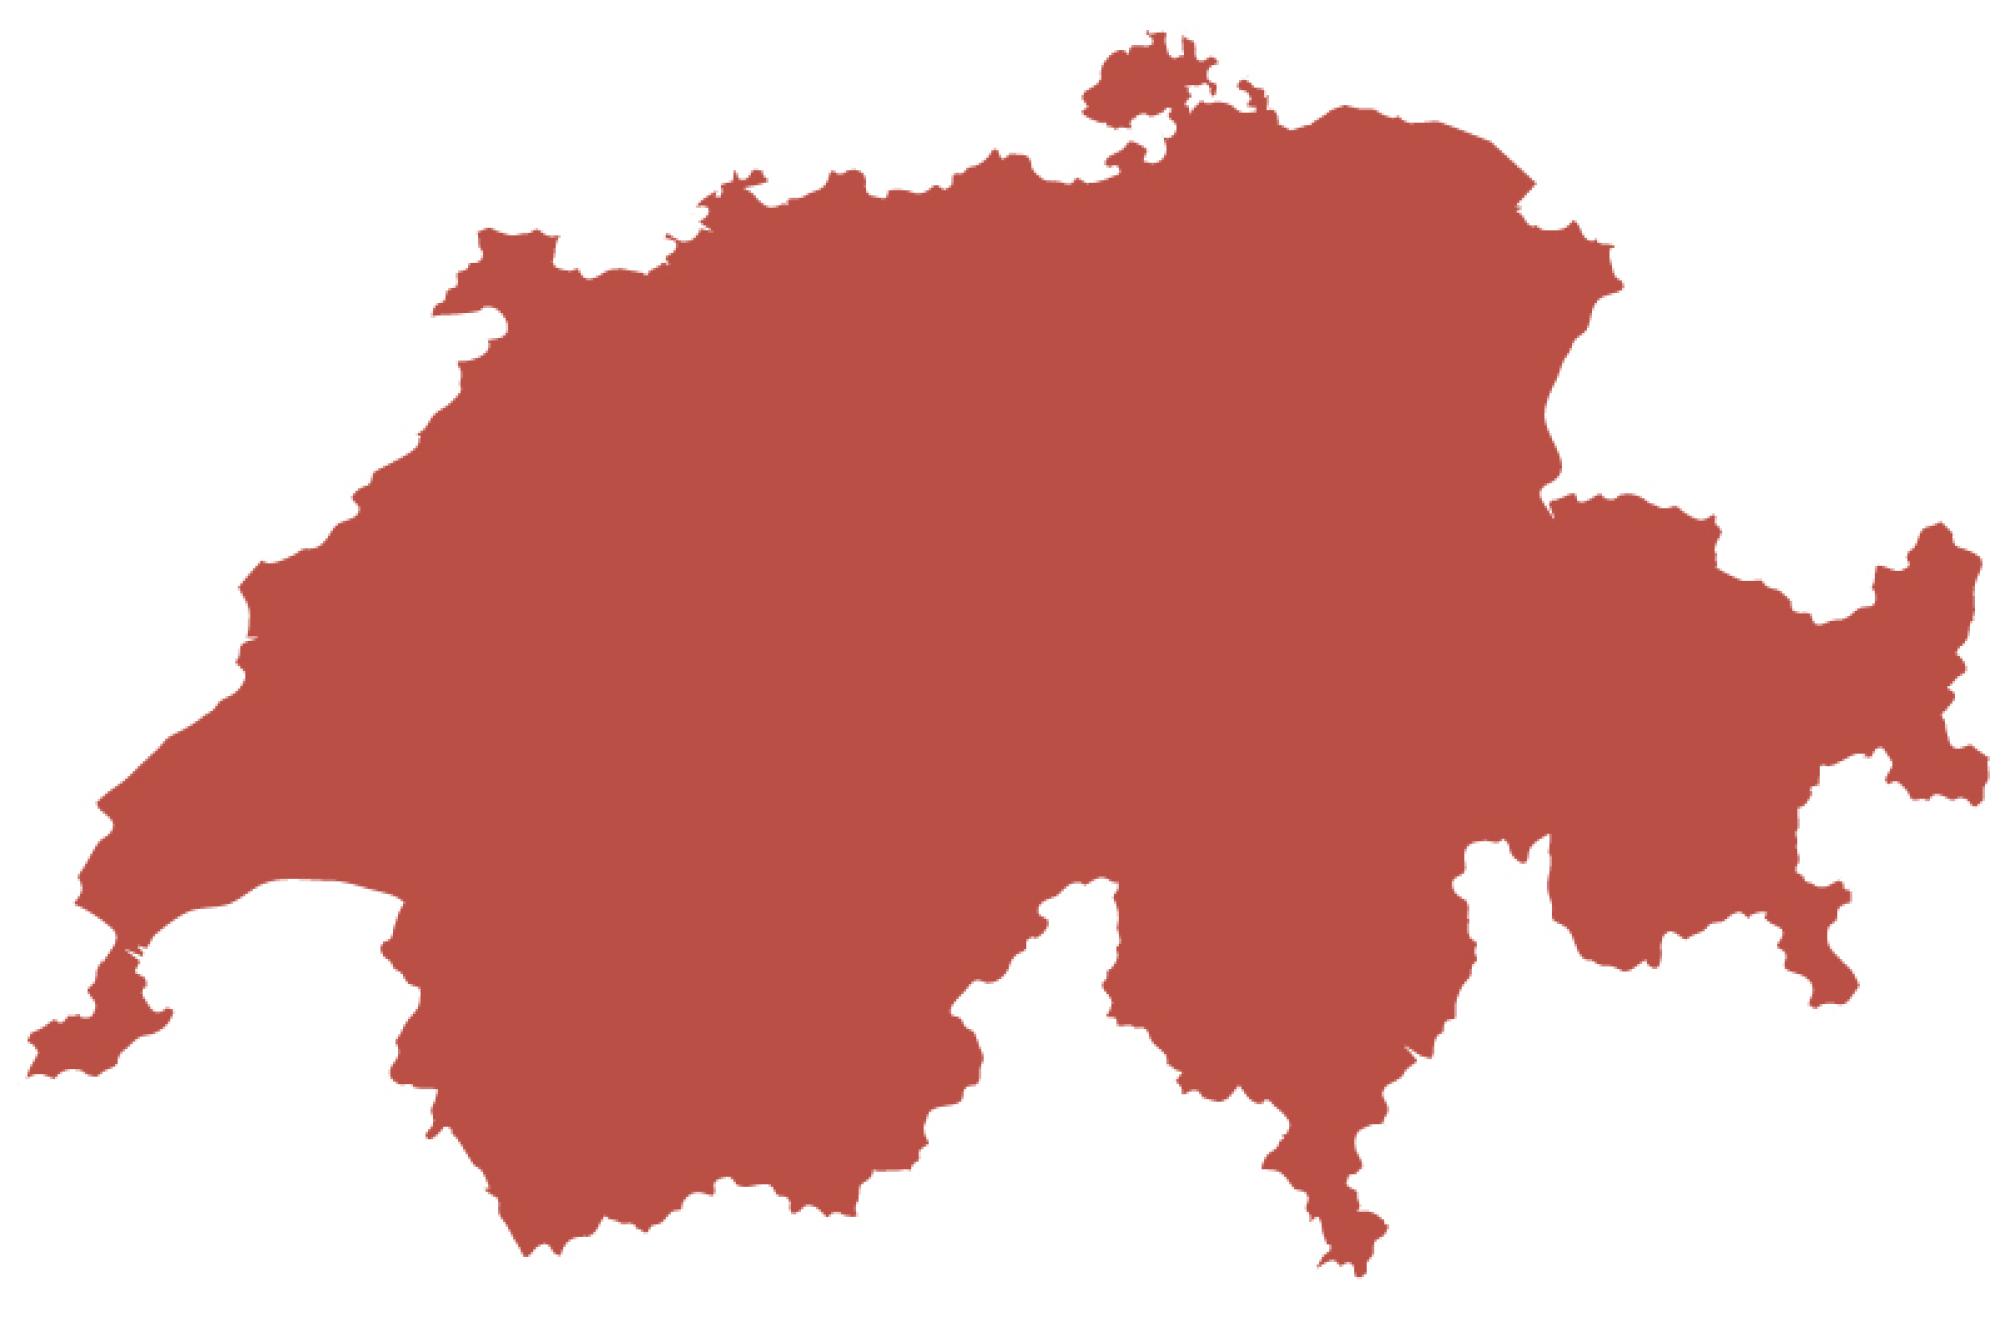 La première carte montre uniquement les contours de la Suisse.